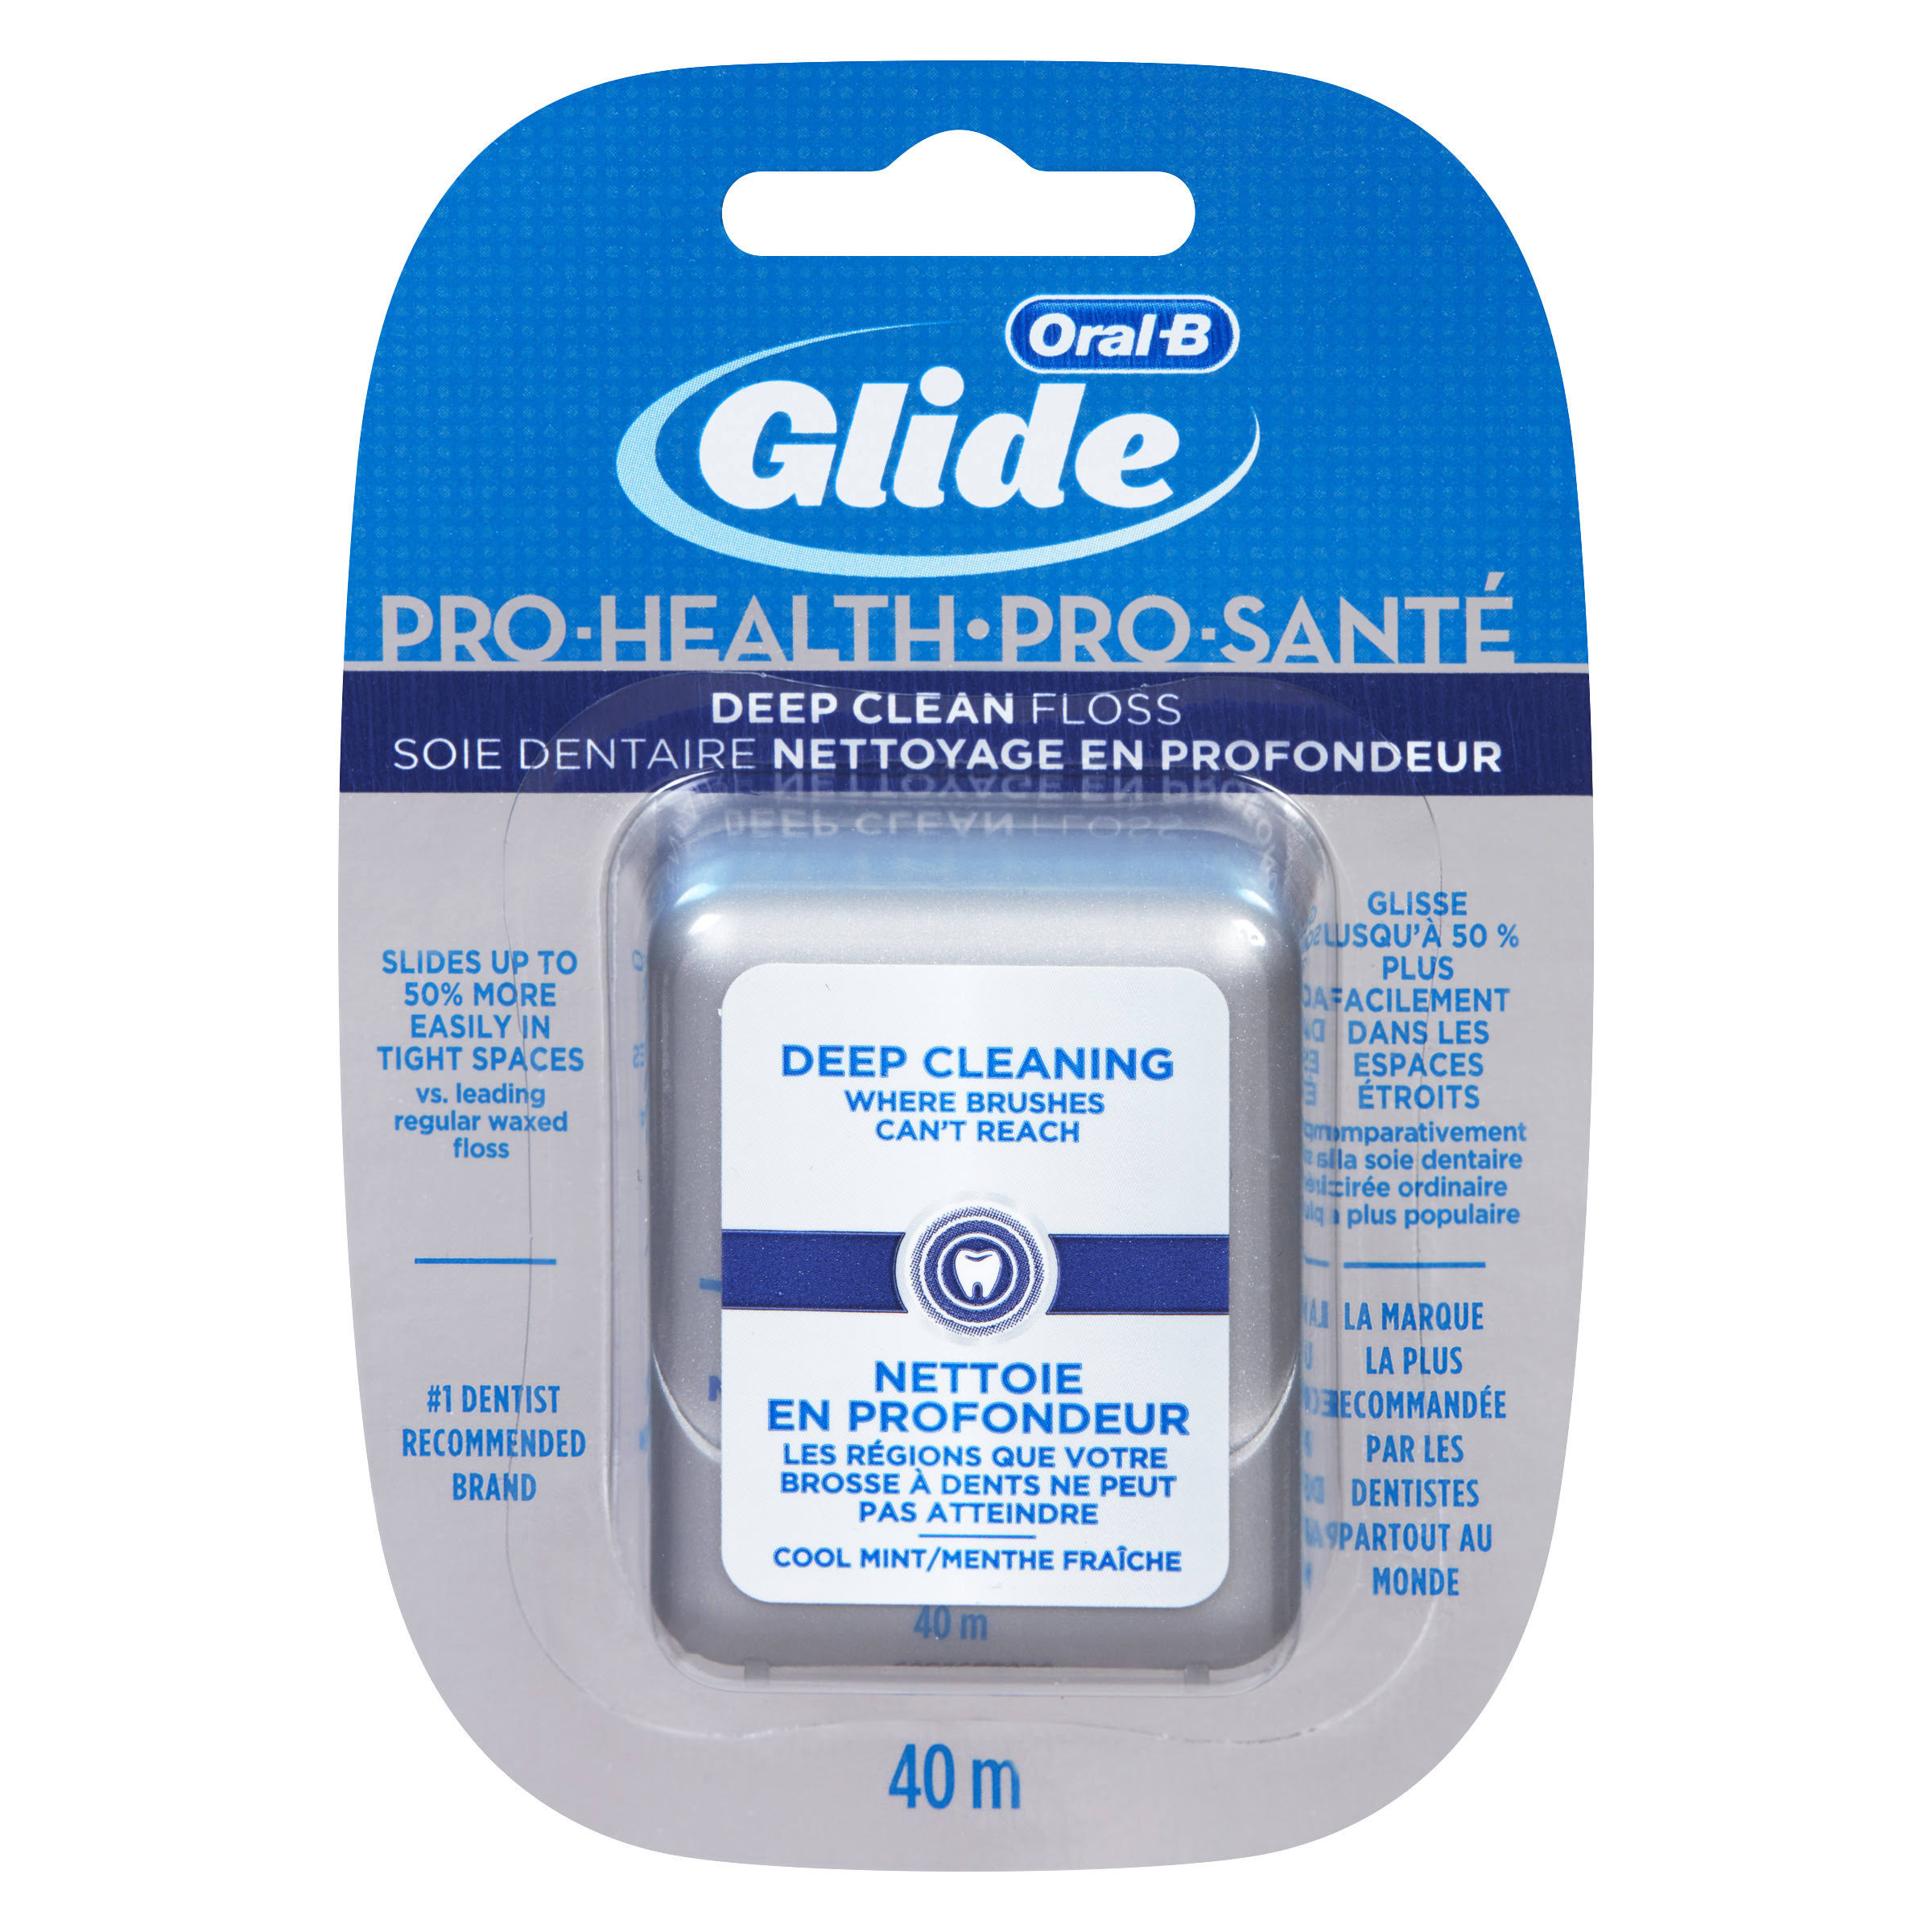 Oral-b Glide Pro-health Deep Clean Floss - 40m